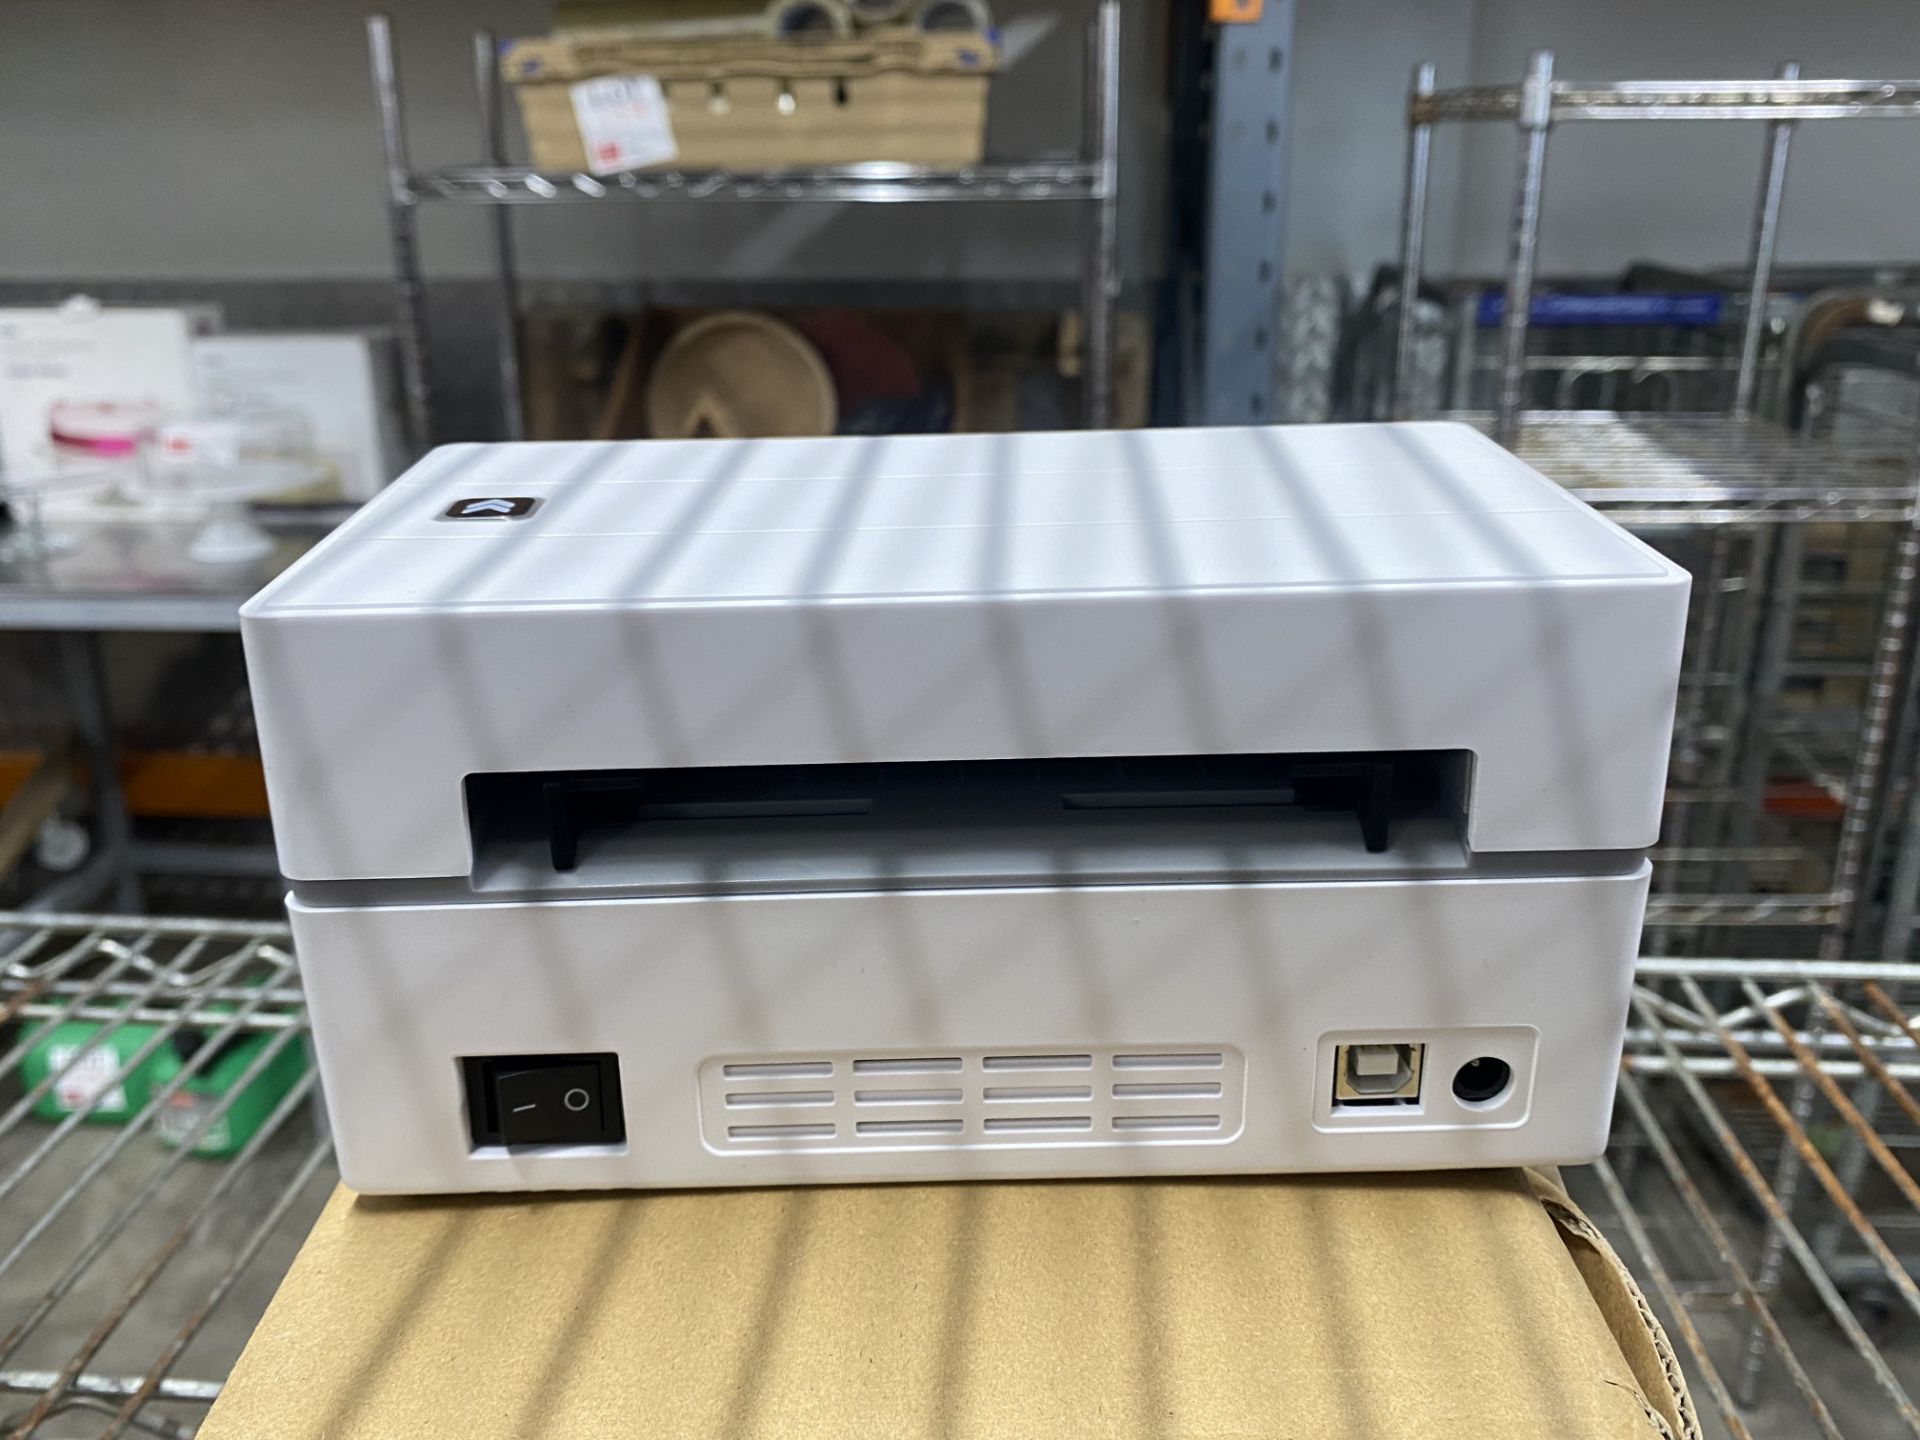 Munbyn thermal printer, model TPP130 - Image 2 of 3